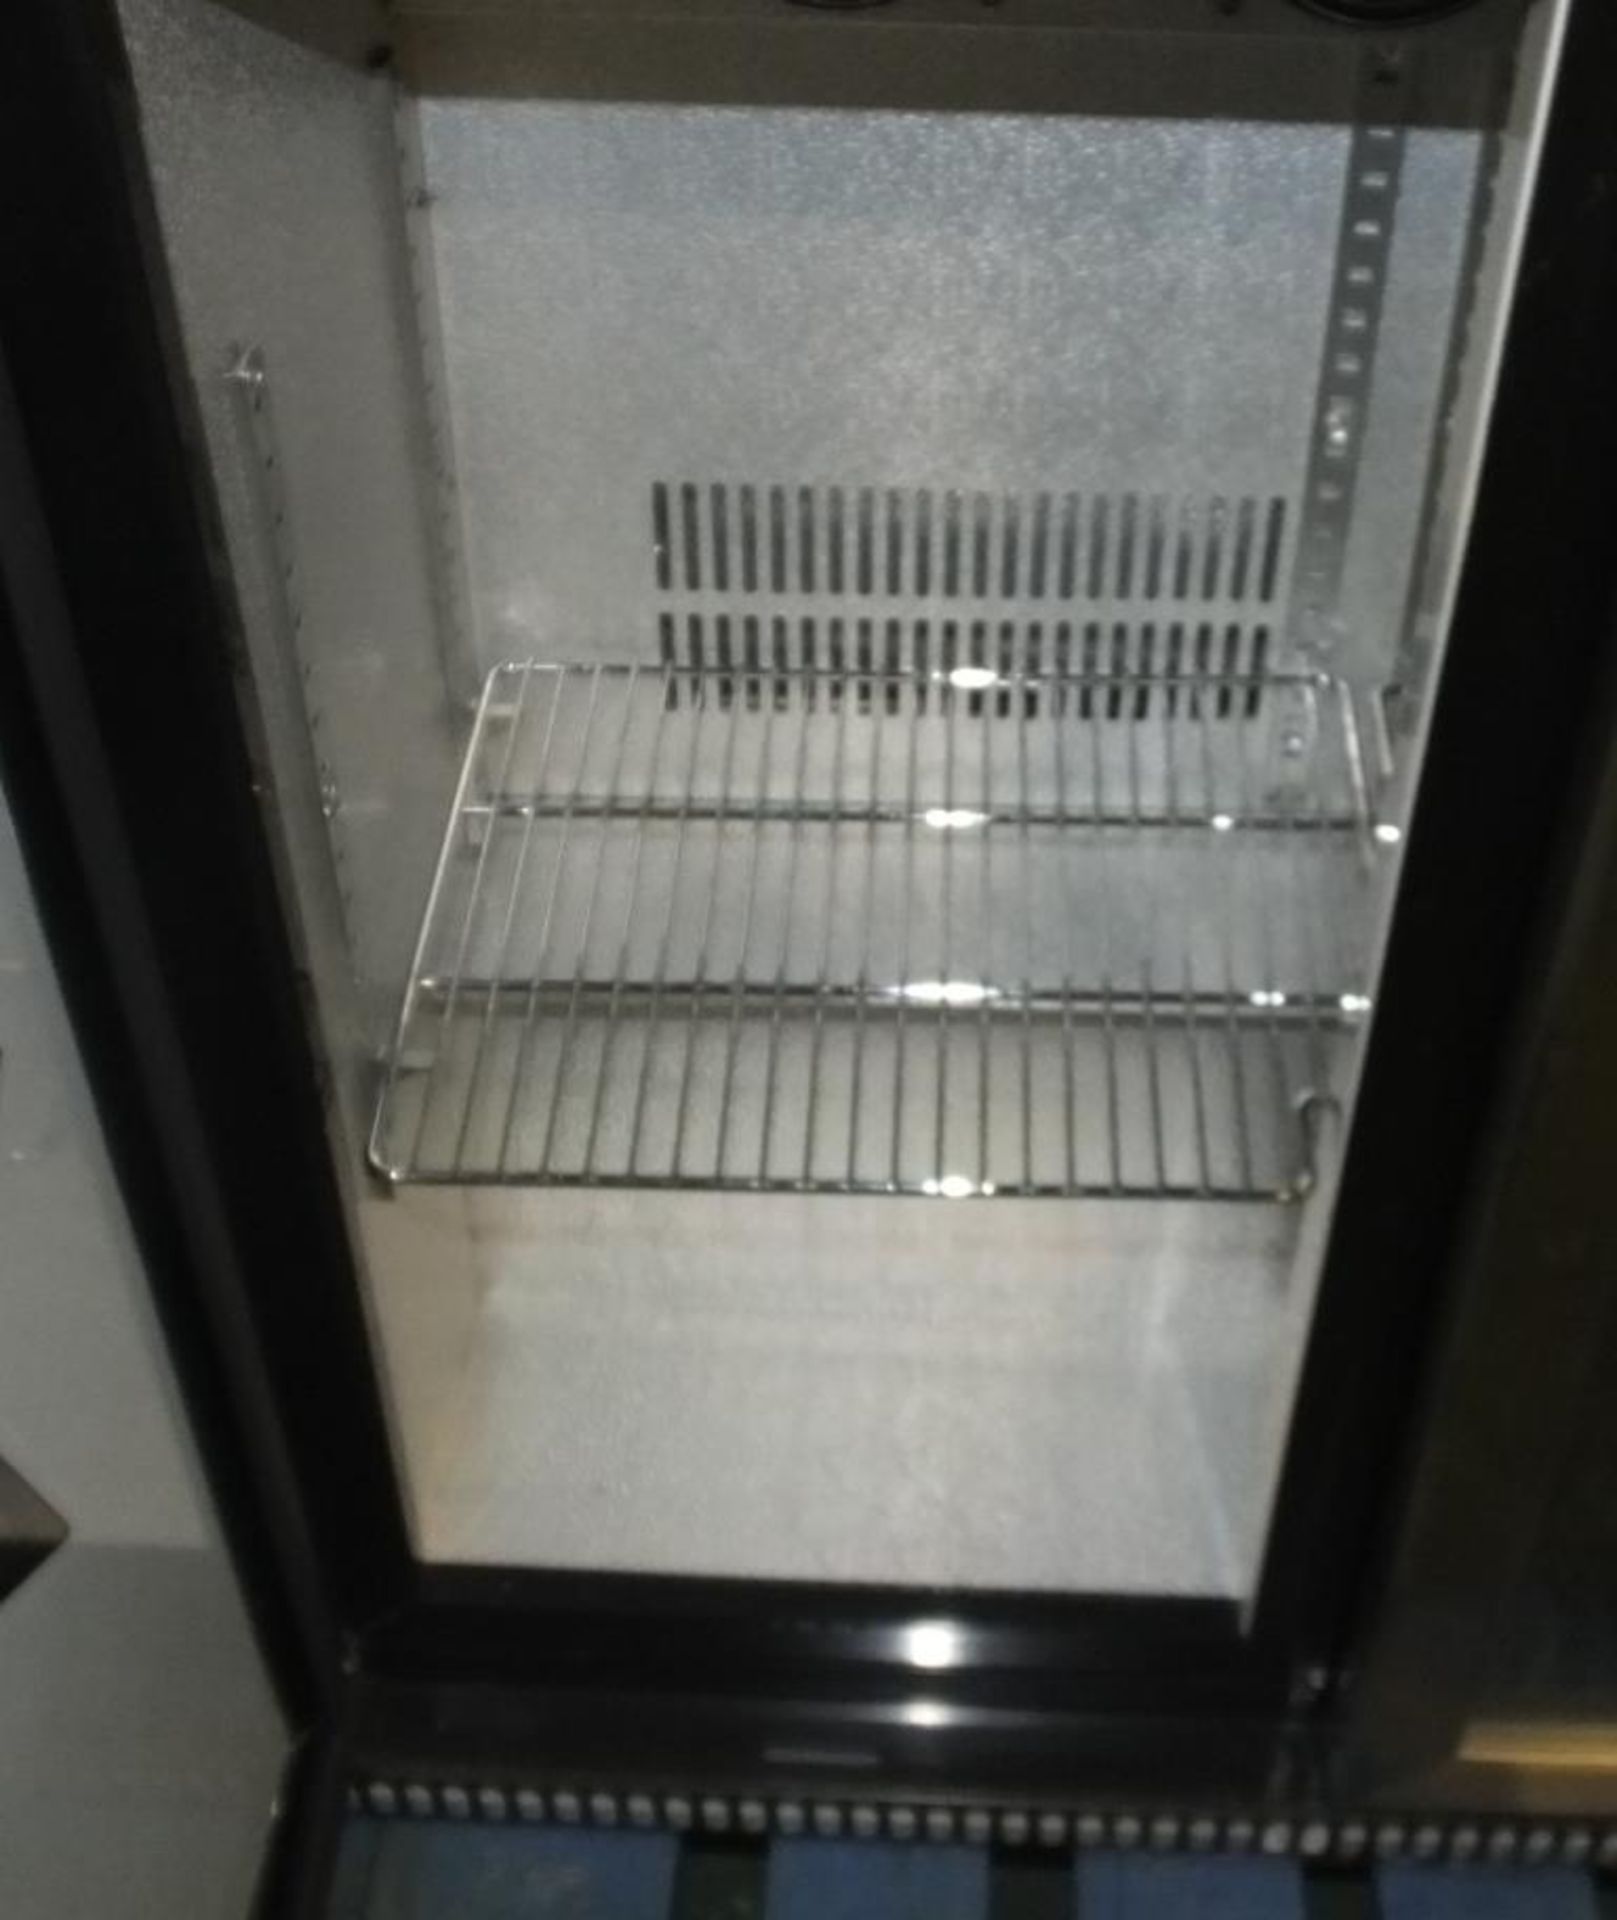 AS SPARES OR REPAIRS - Double door display fridge - Image 2 of 3